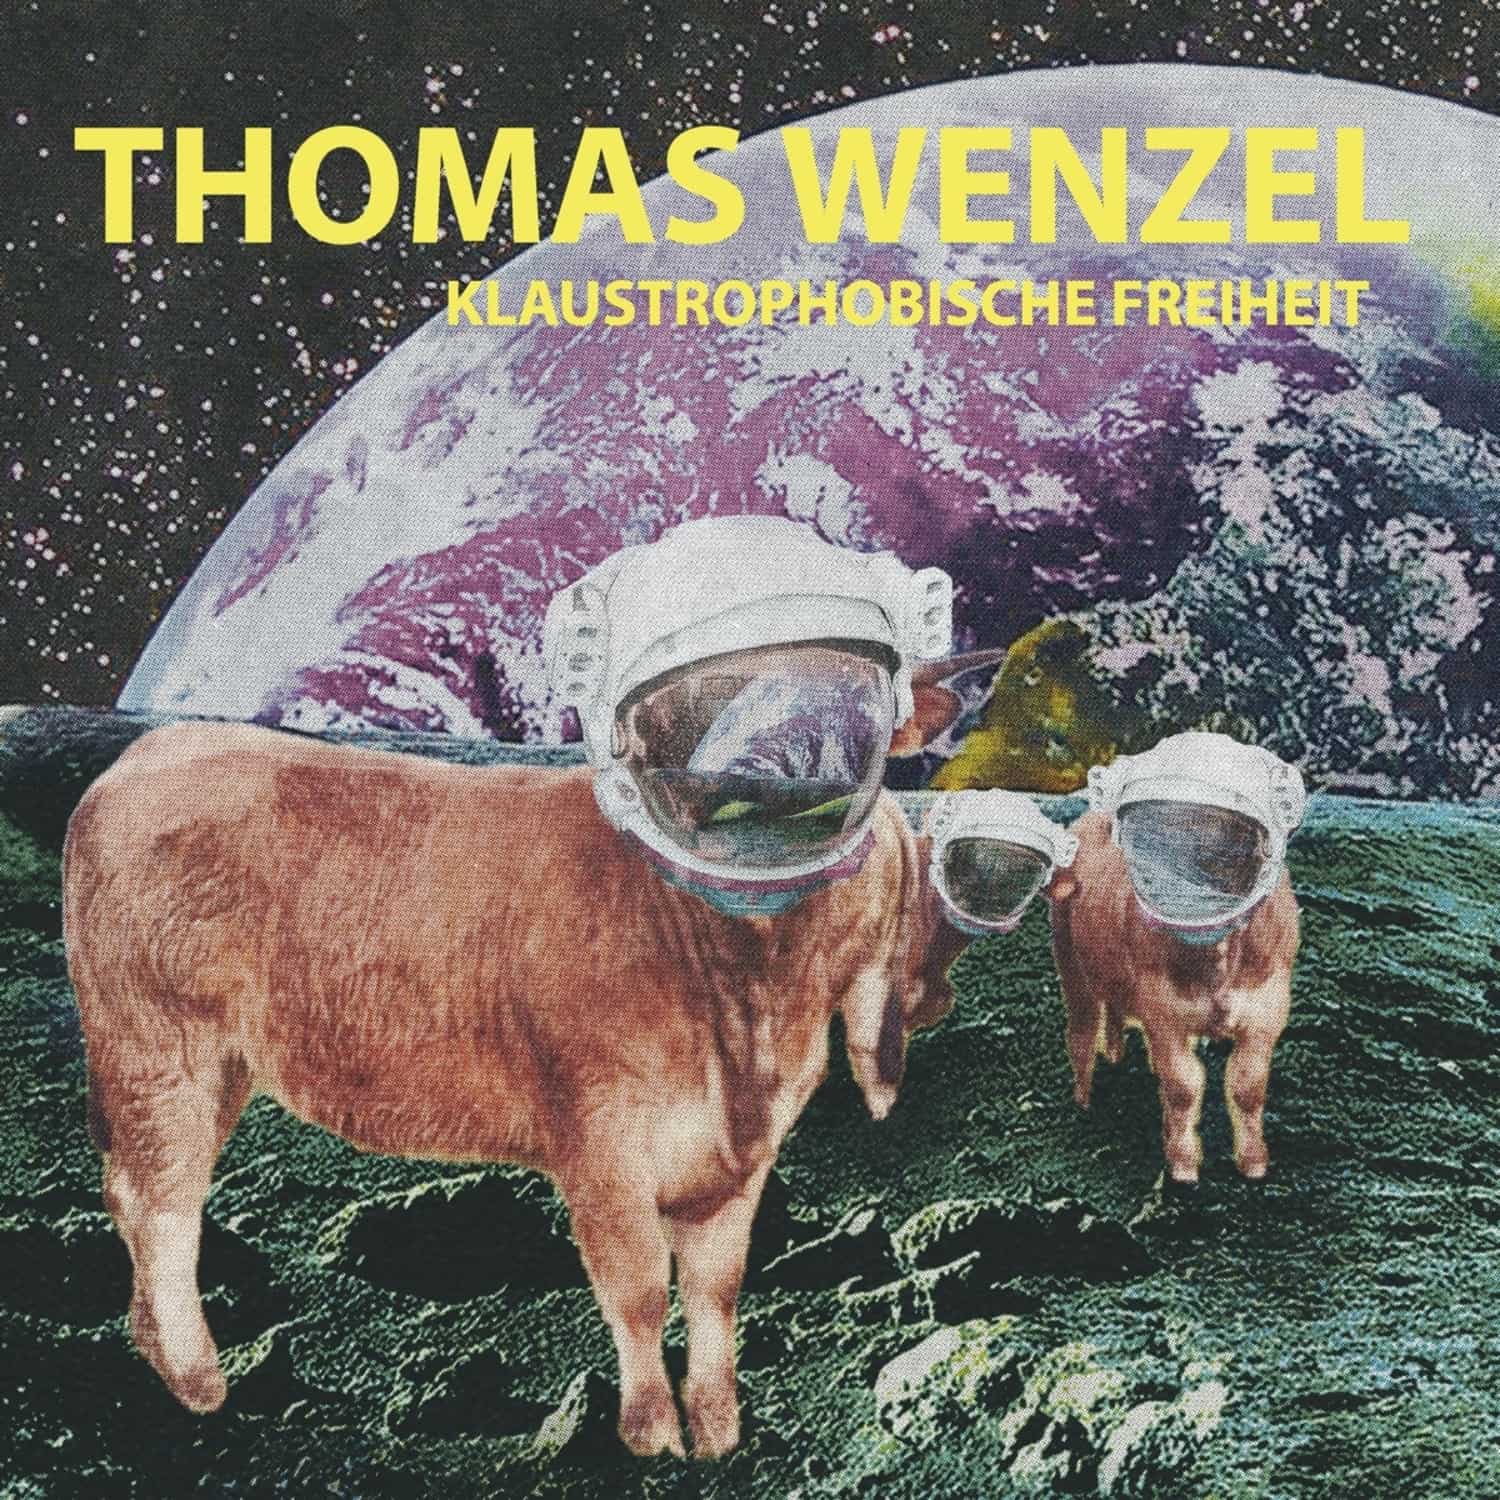 Thomas Wenzel - KLAUSTROPHOBISCHE FREIHEIT 